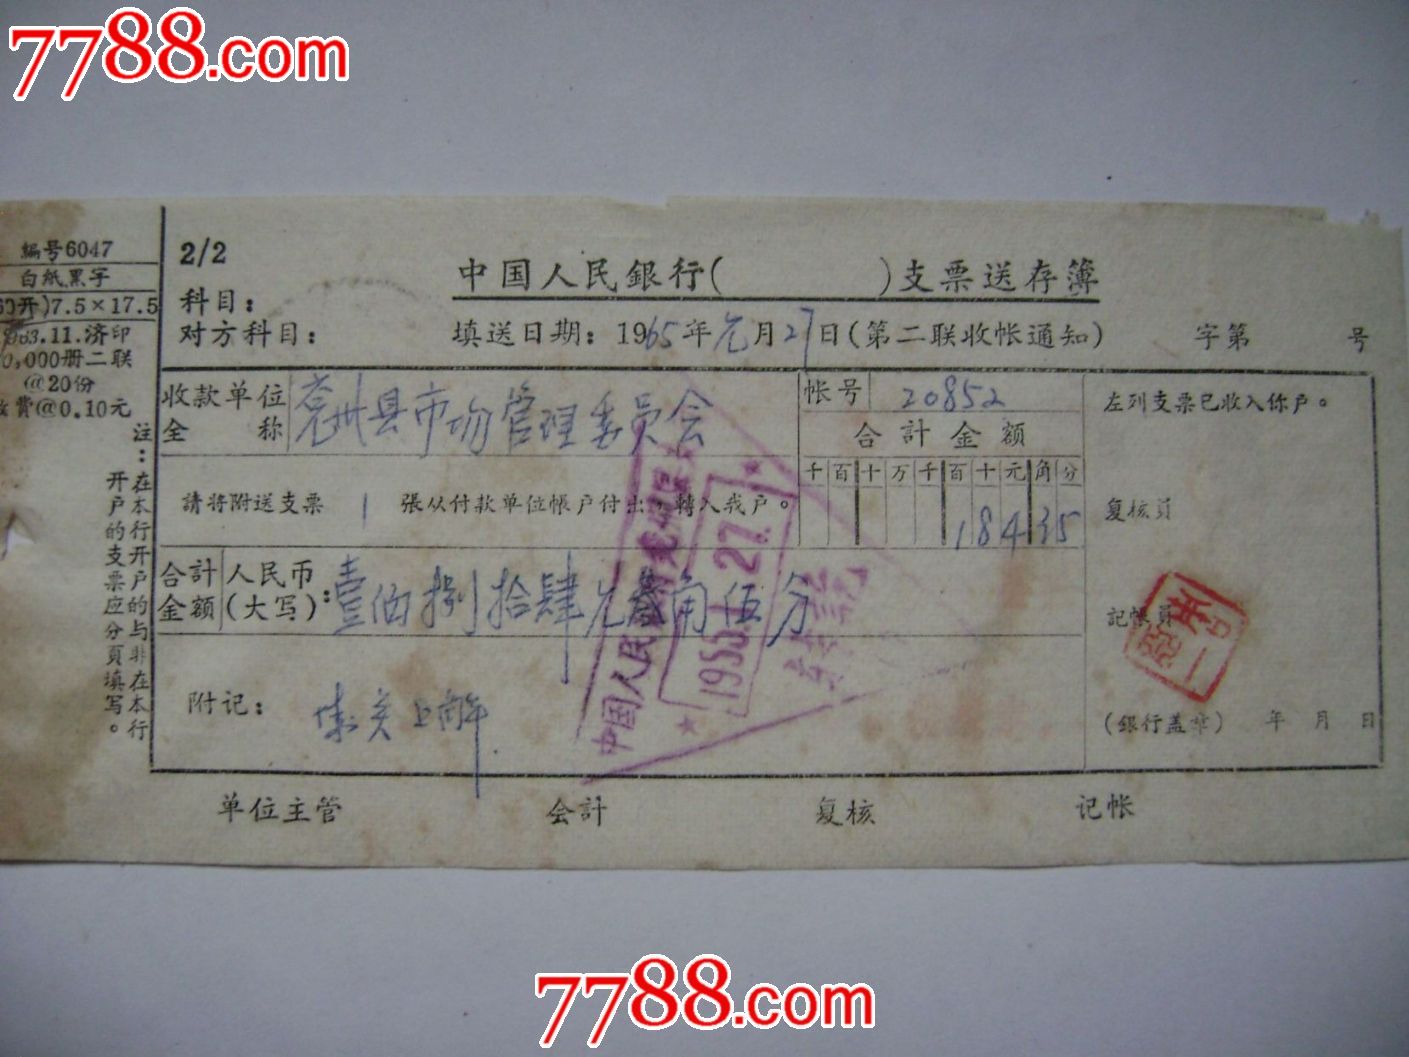 中国人民银行支票送存单-价格:1.0000元-se24